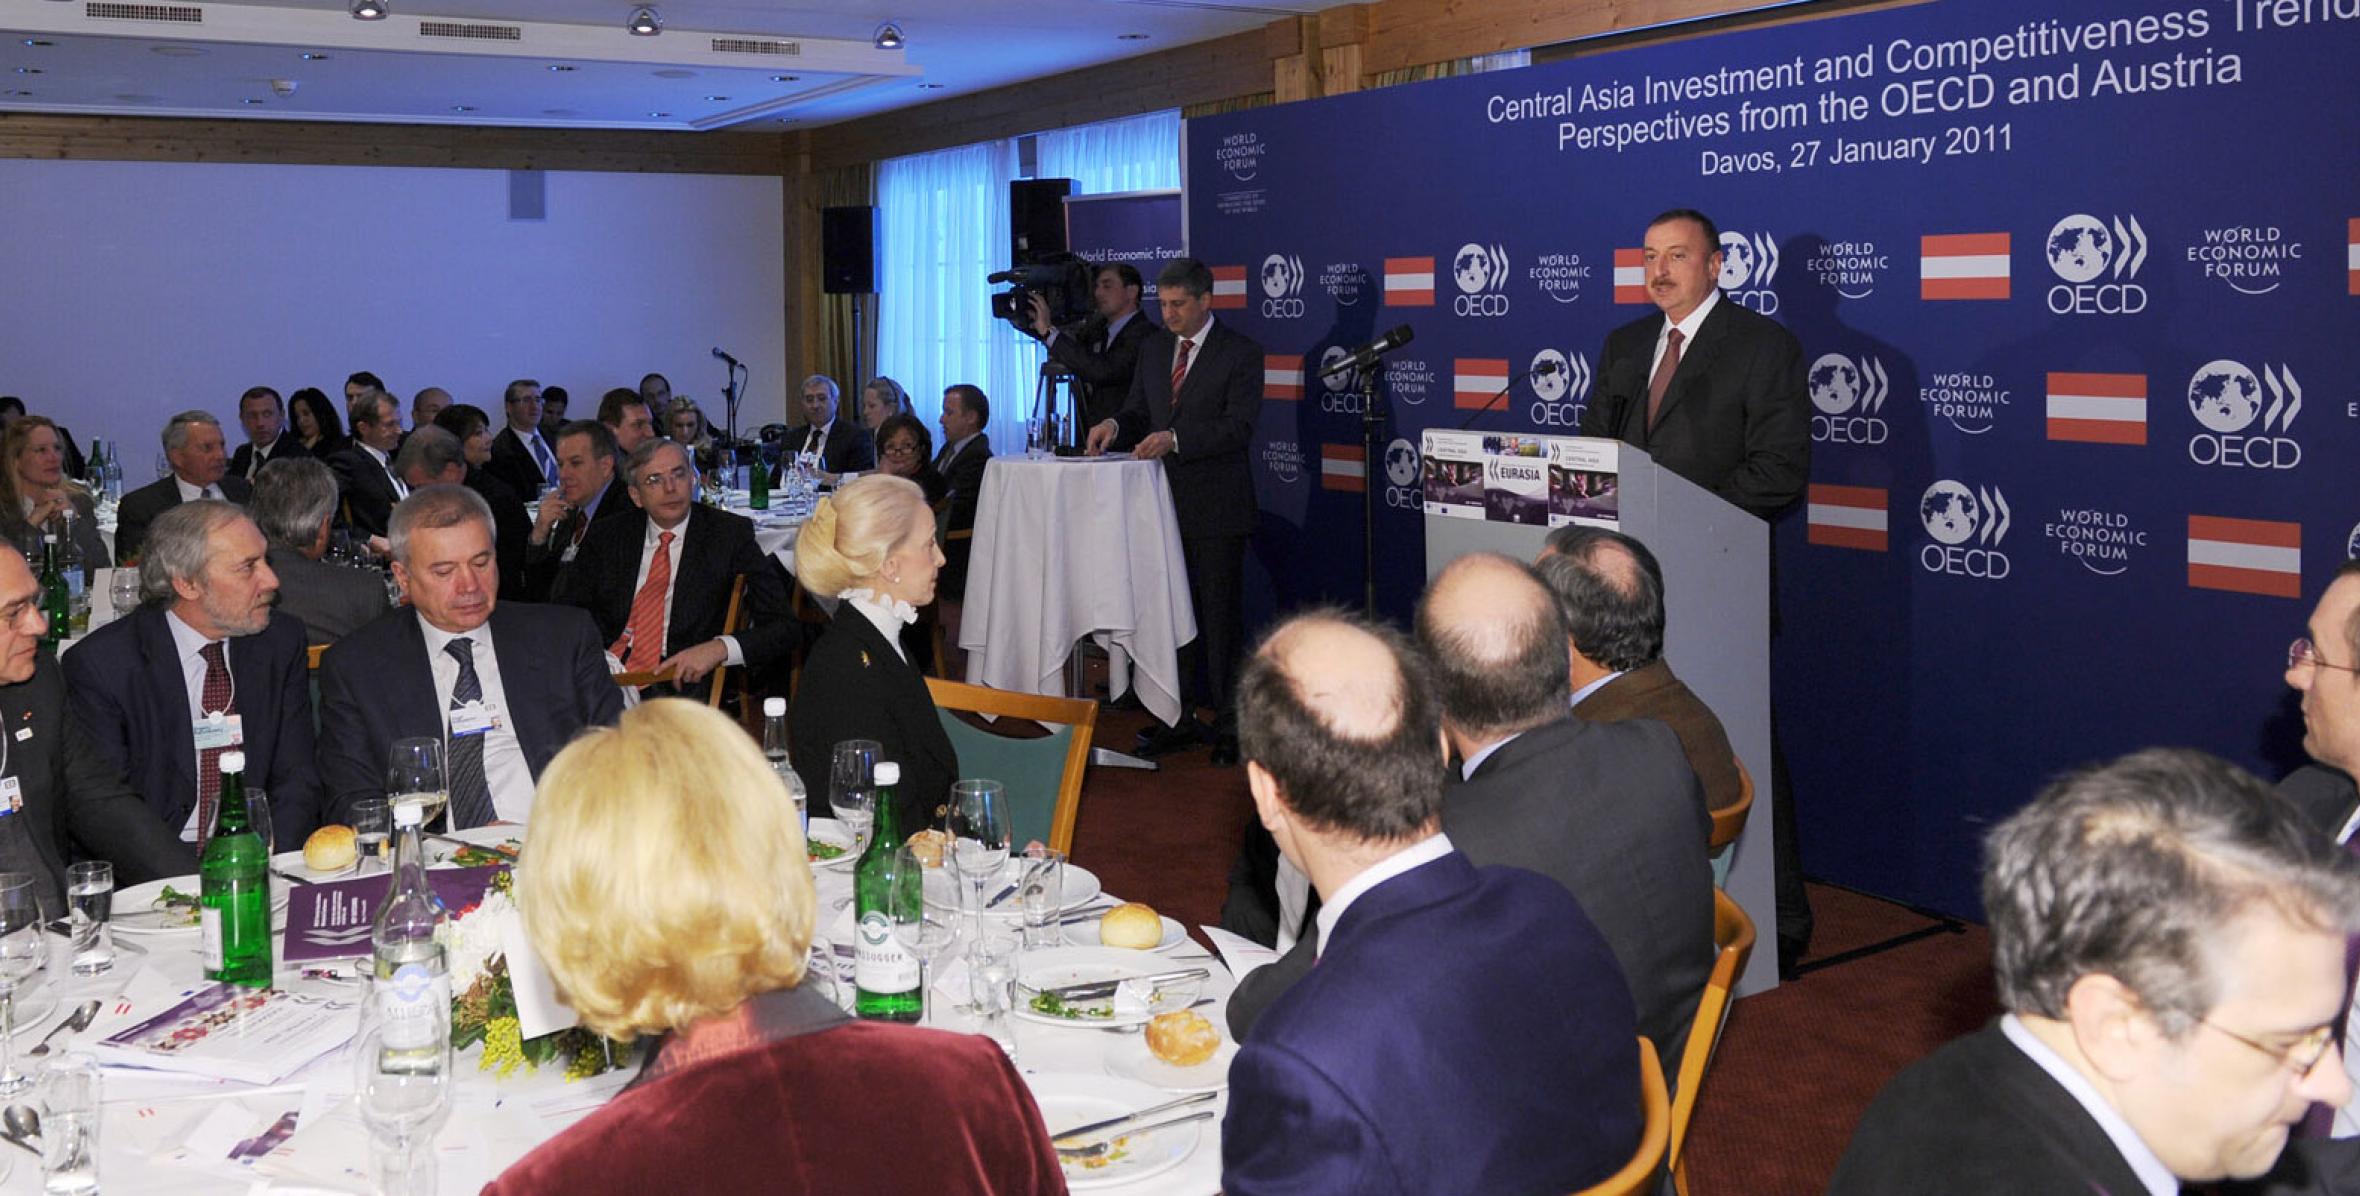 Ильхам Алиев присутствовал на совместном обеде Австрия-Организация экономического сотрудничества и развития